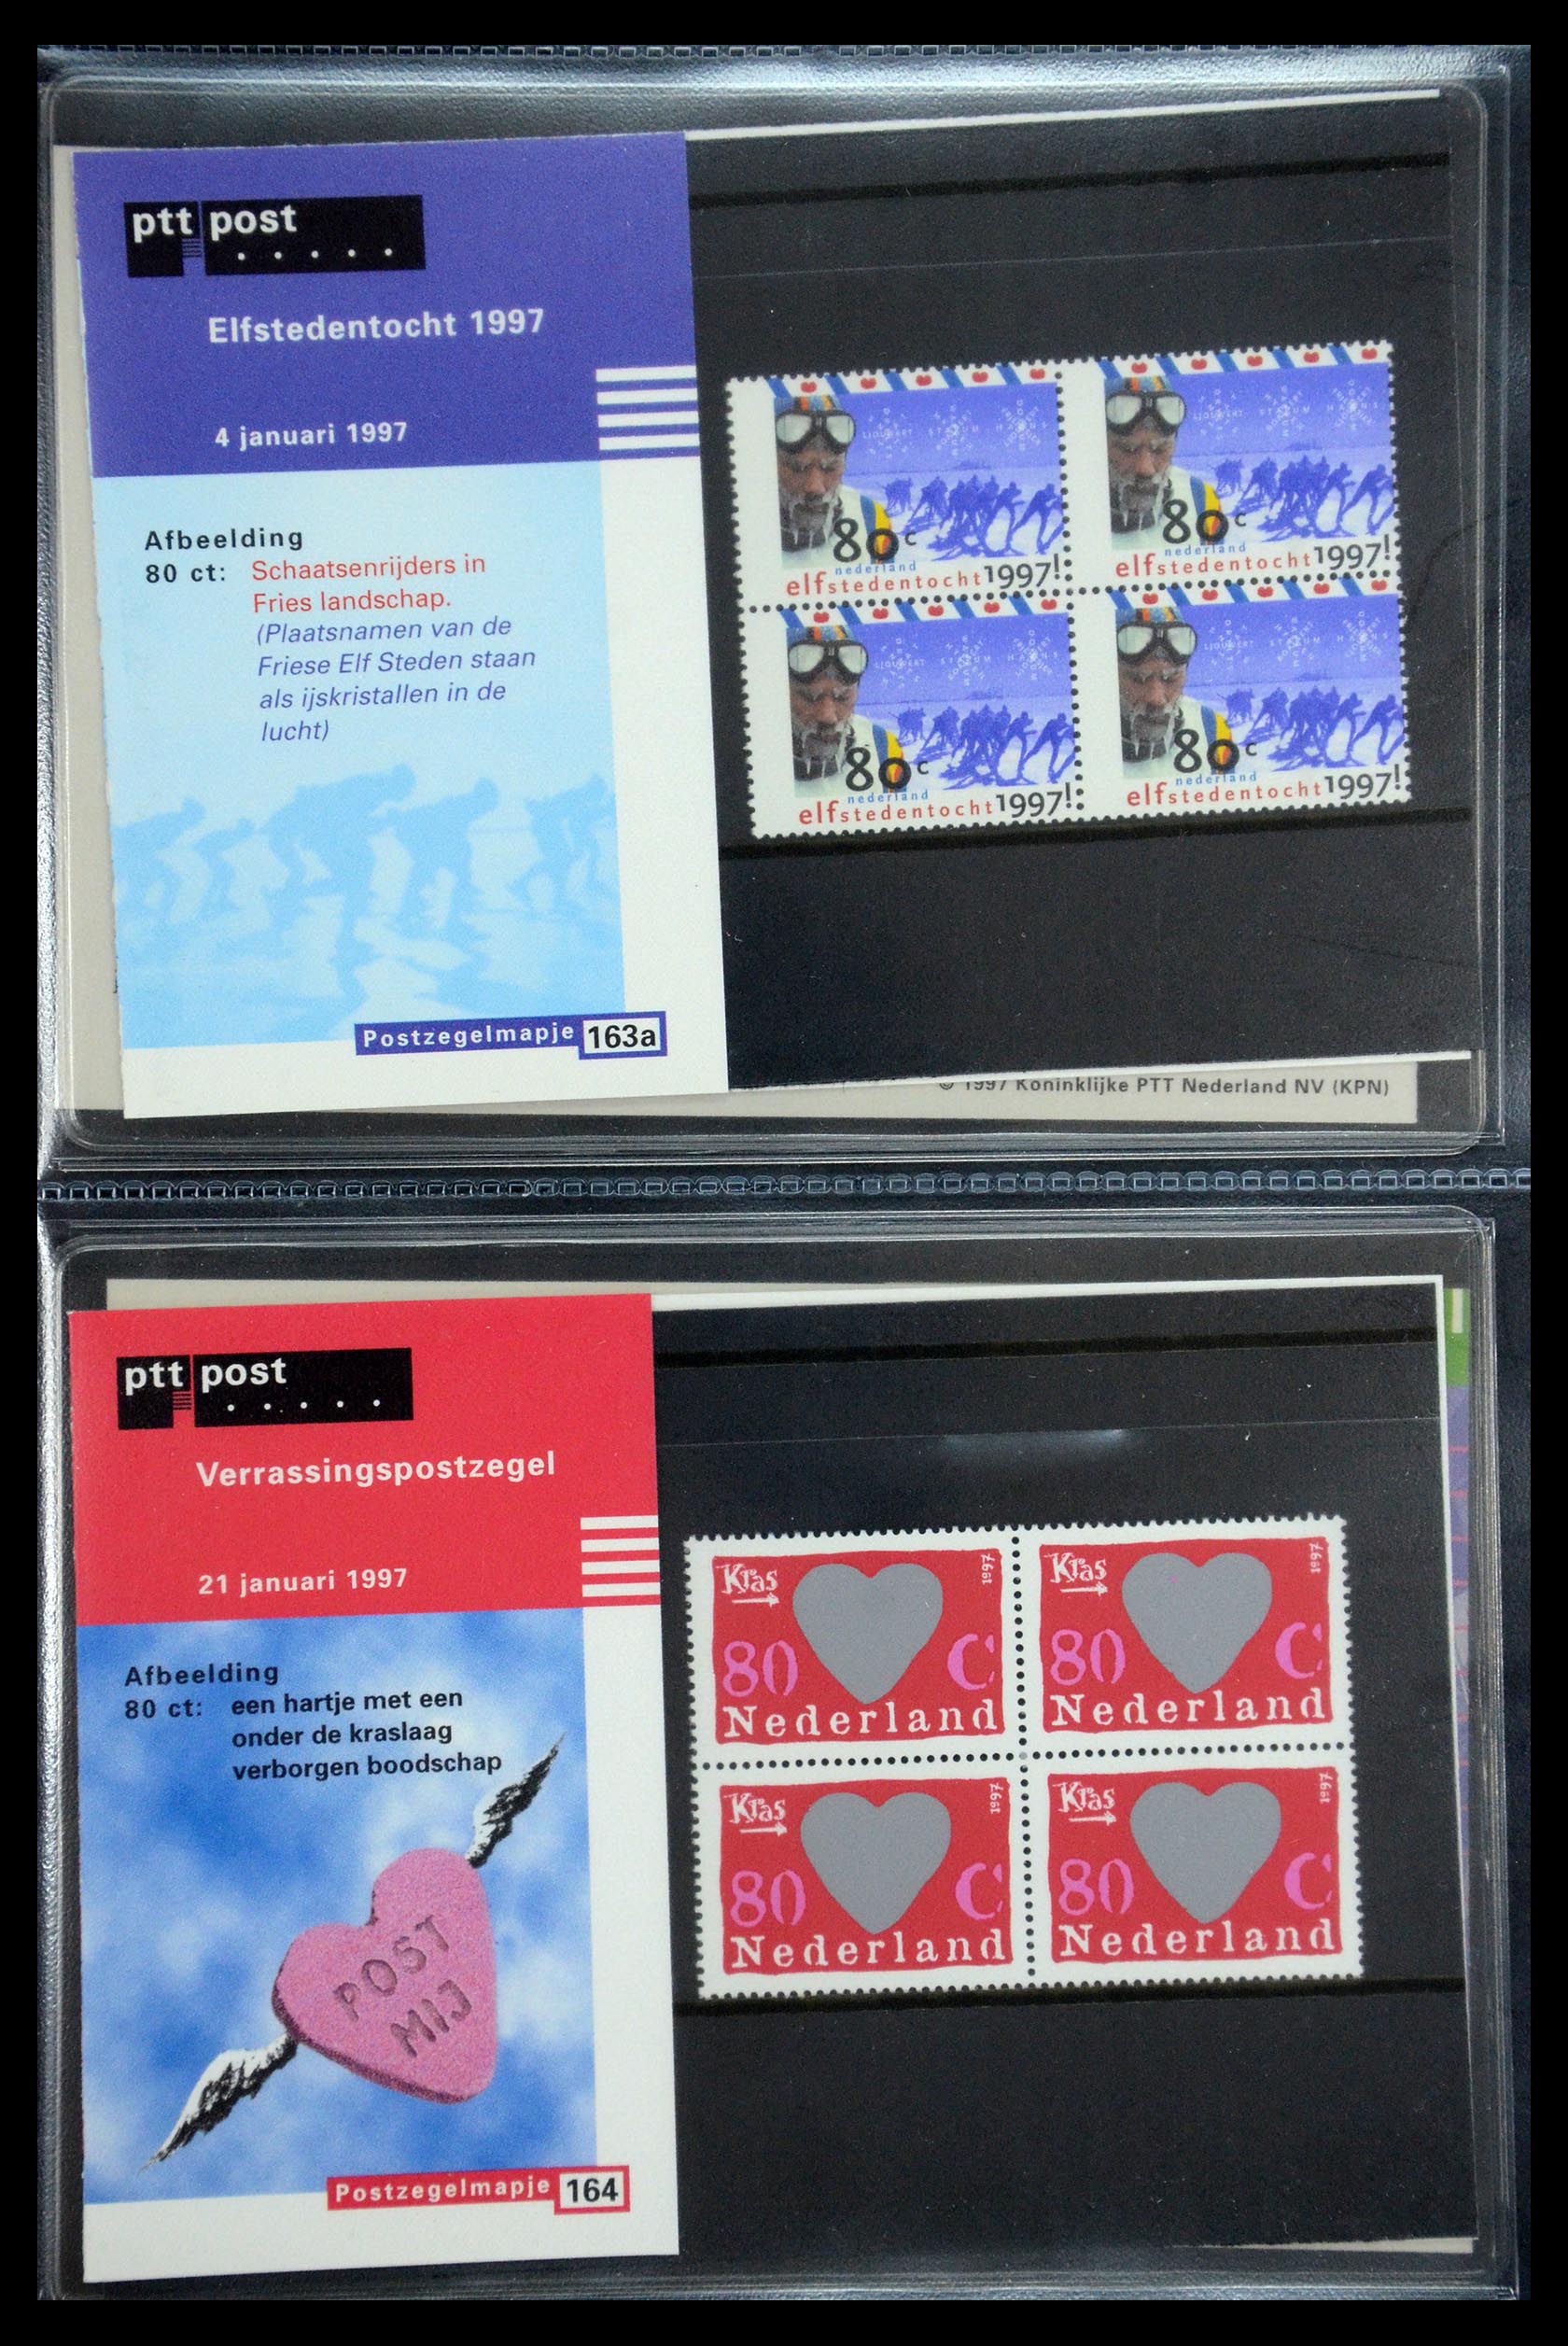 35187 084 - Stamp Collection 35187 Netherlands PTT presentation packs 1982-2019!